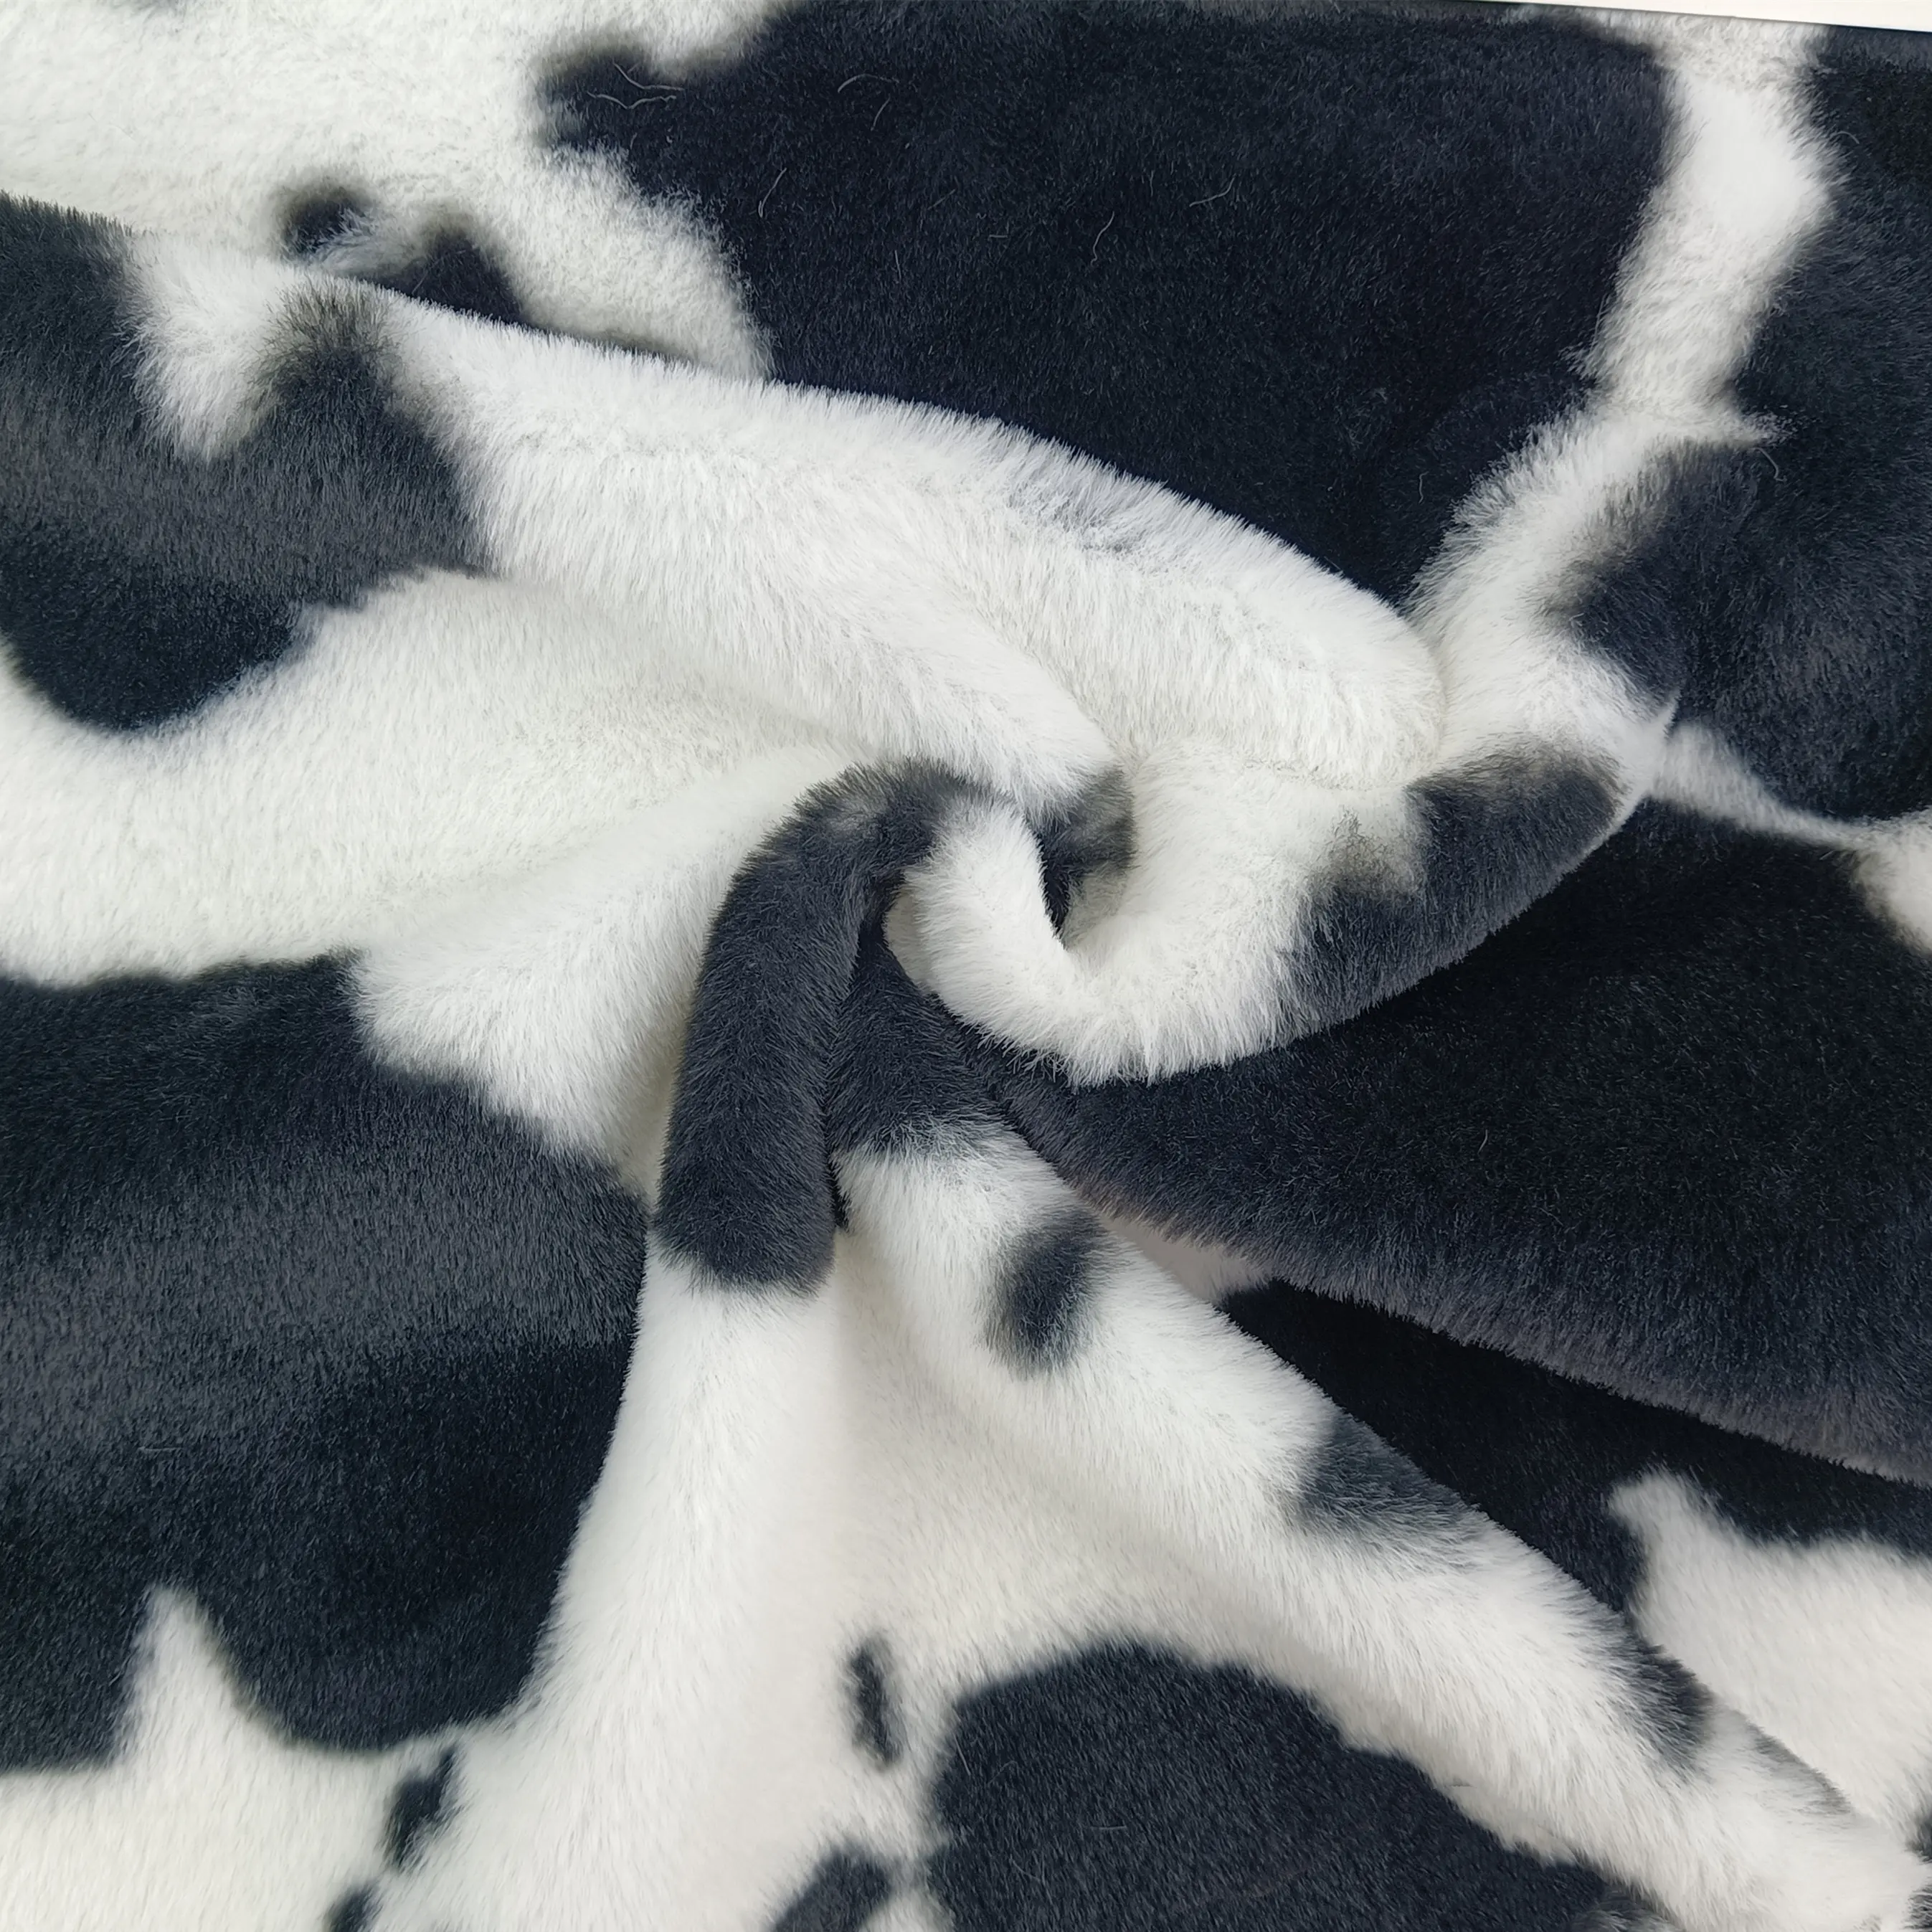 Мягкая теплая ткань из искусственного меха кролика с классическим принтом коровы для ковра/одеяла/пальто